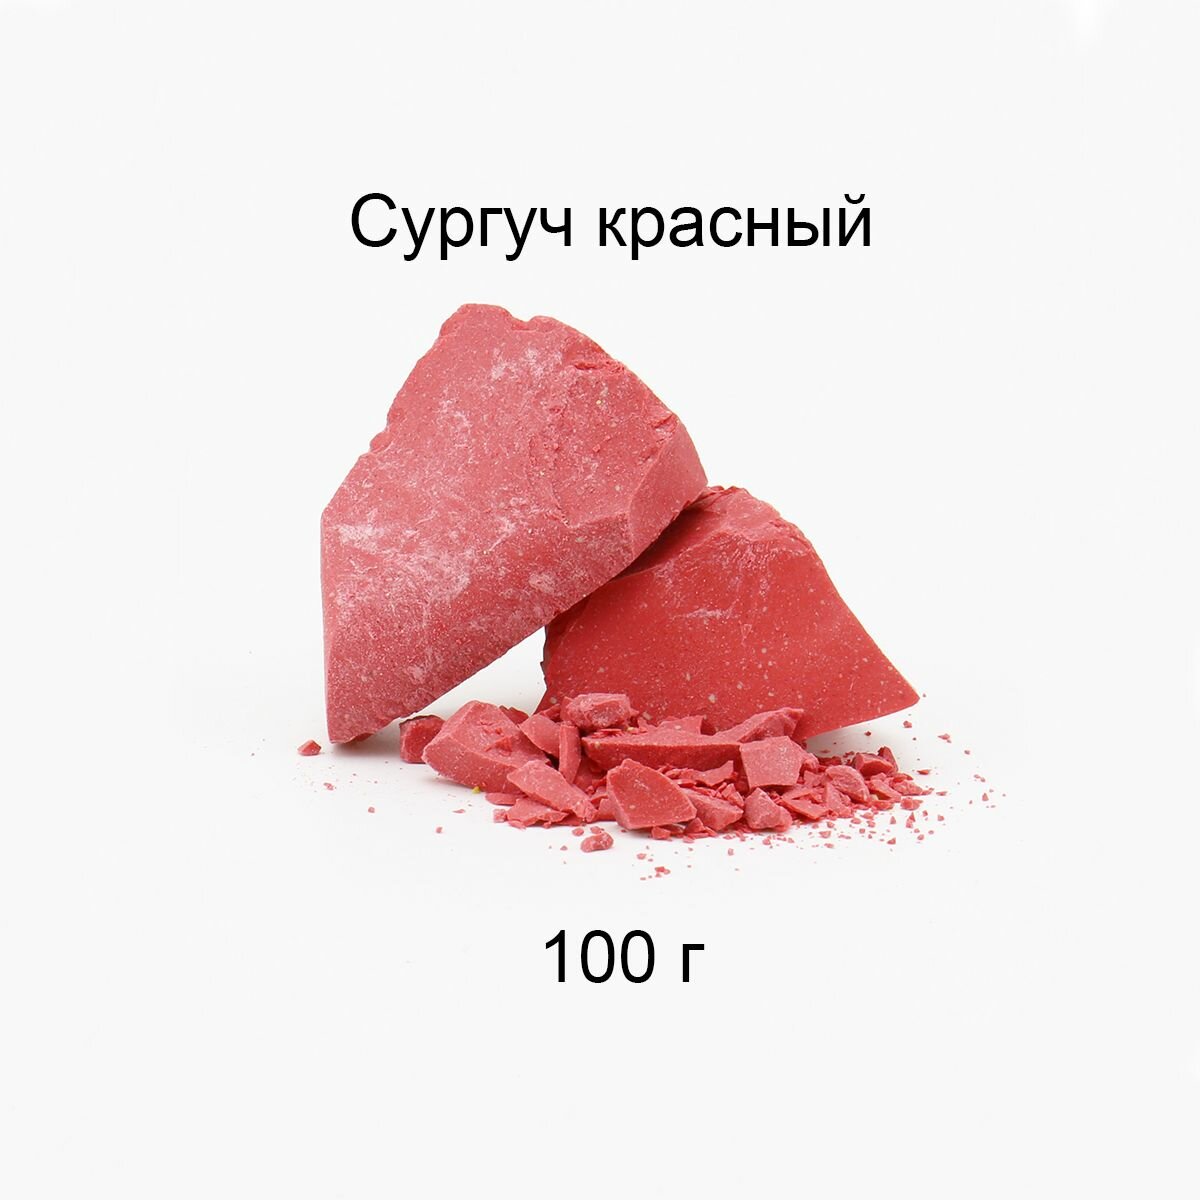 Сургуч кусковой красный 100 г